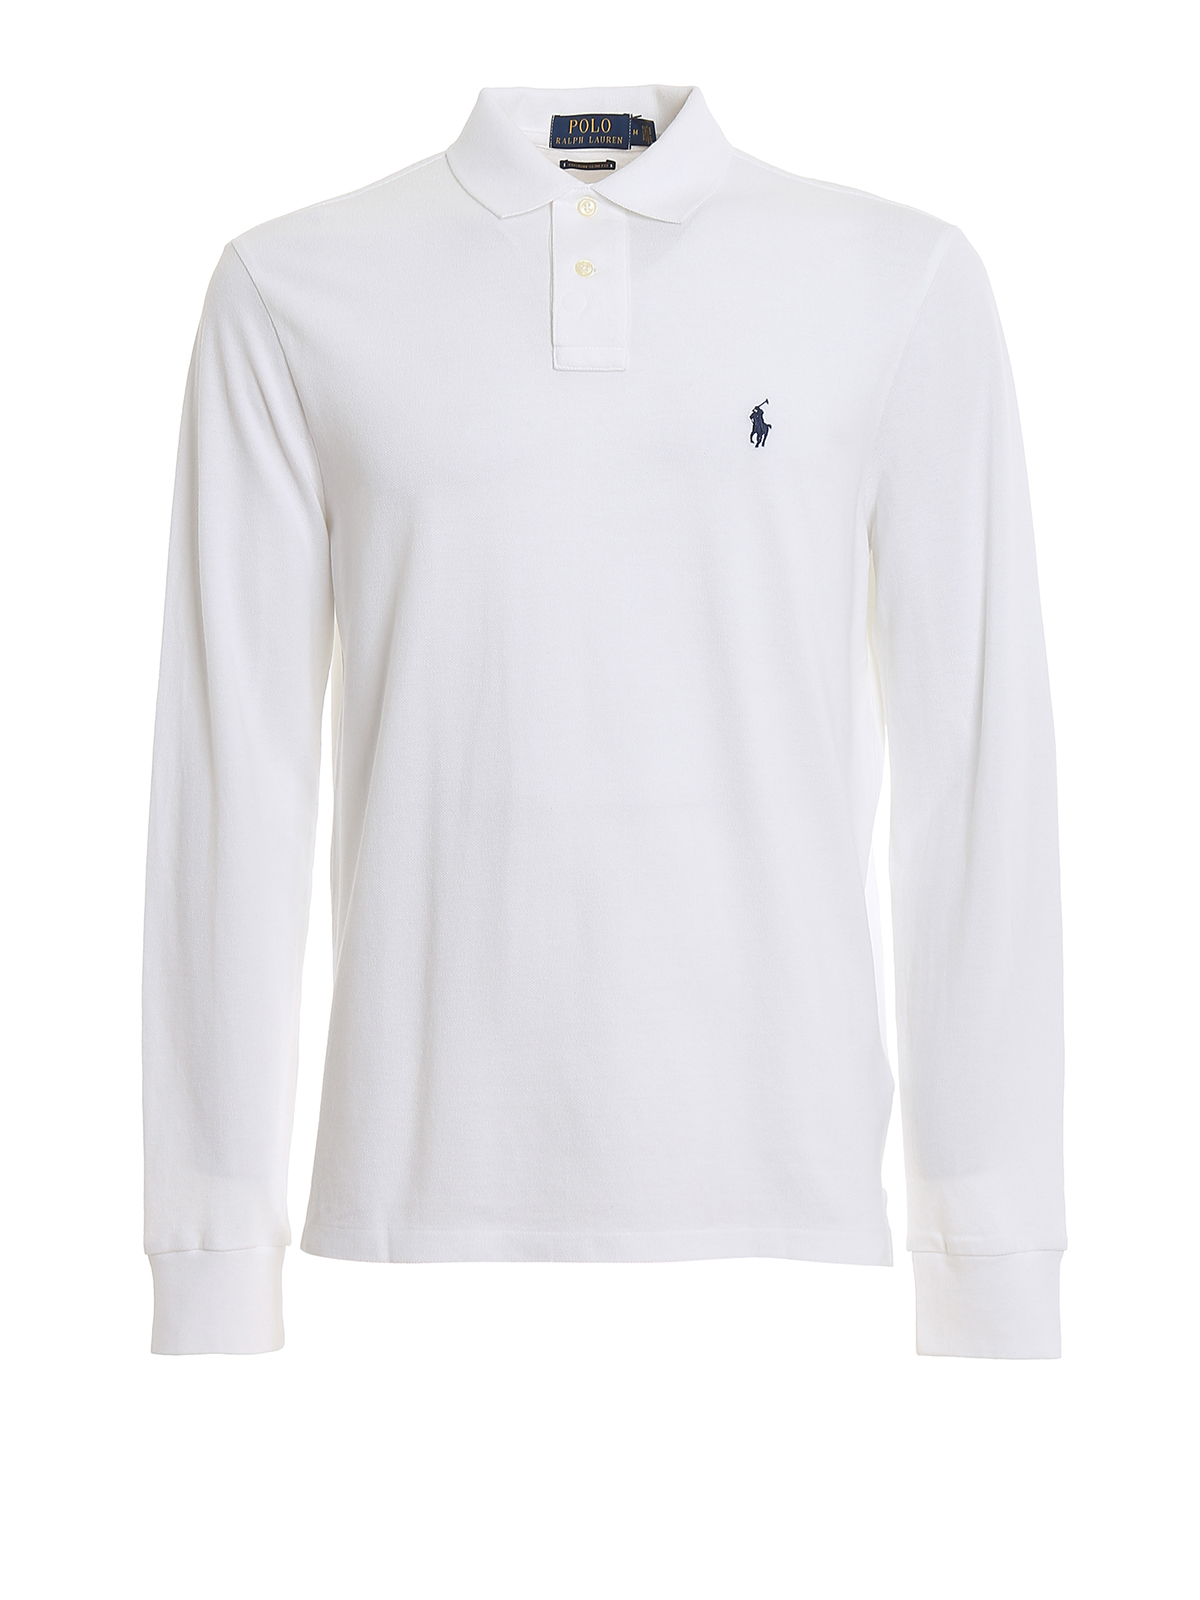 Install Reorganize Excerpt Polo shirts Polo Ralph Lauren - White long sleeve cotton polo - 710680790001